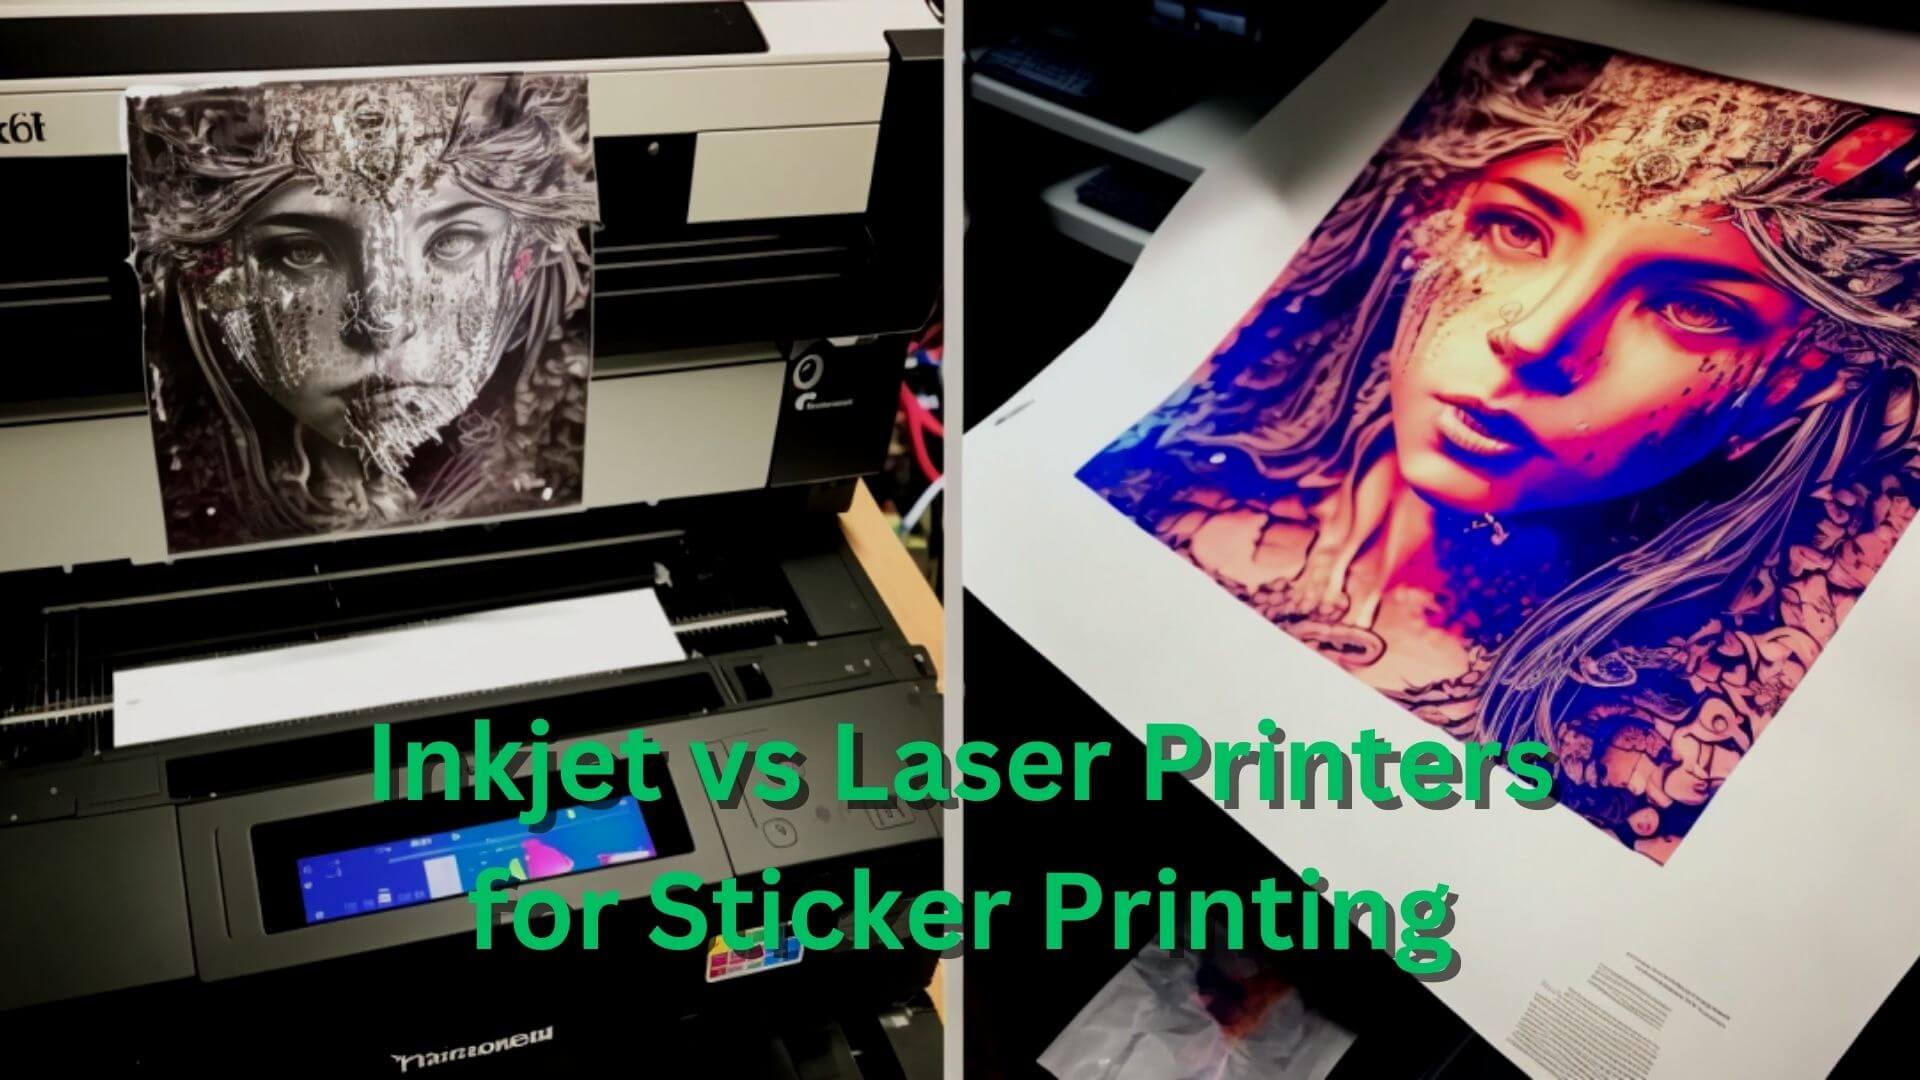 Inkjet vs Laser Printers for Sticker Printing